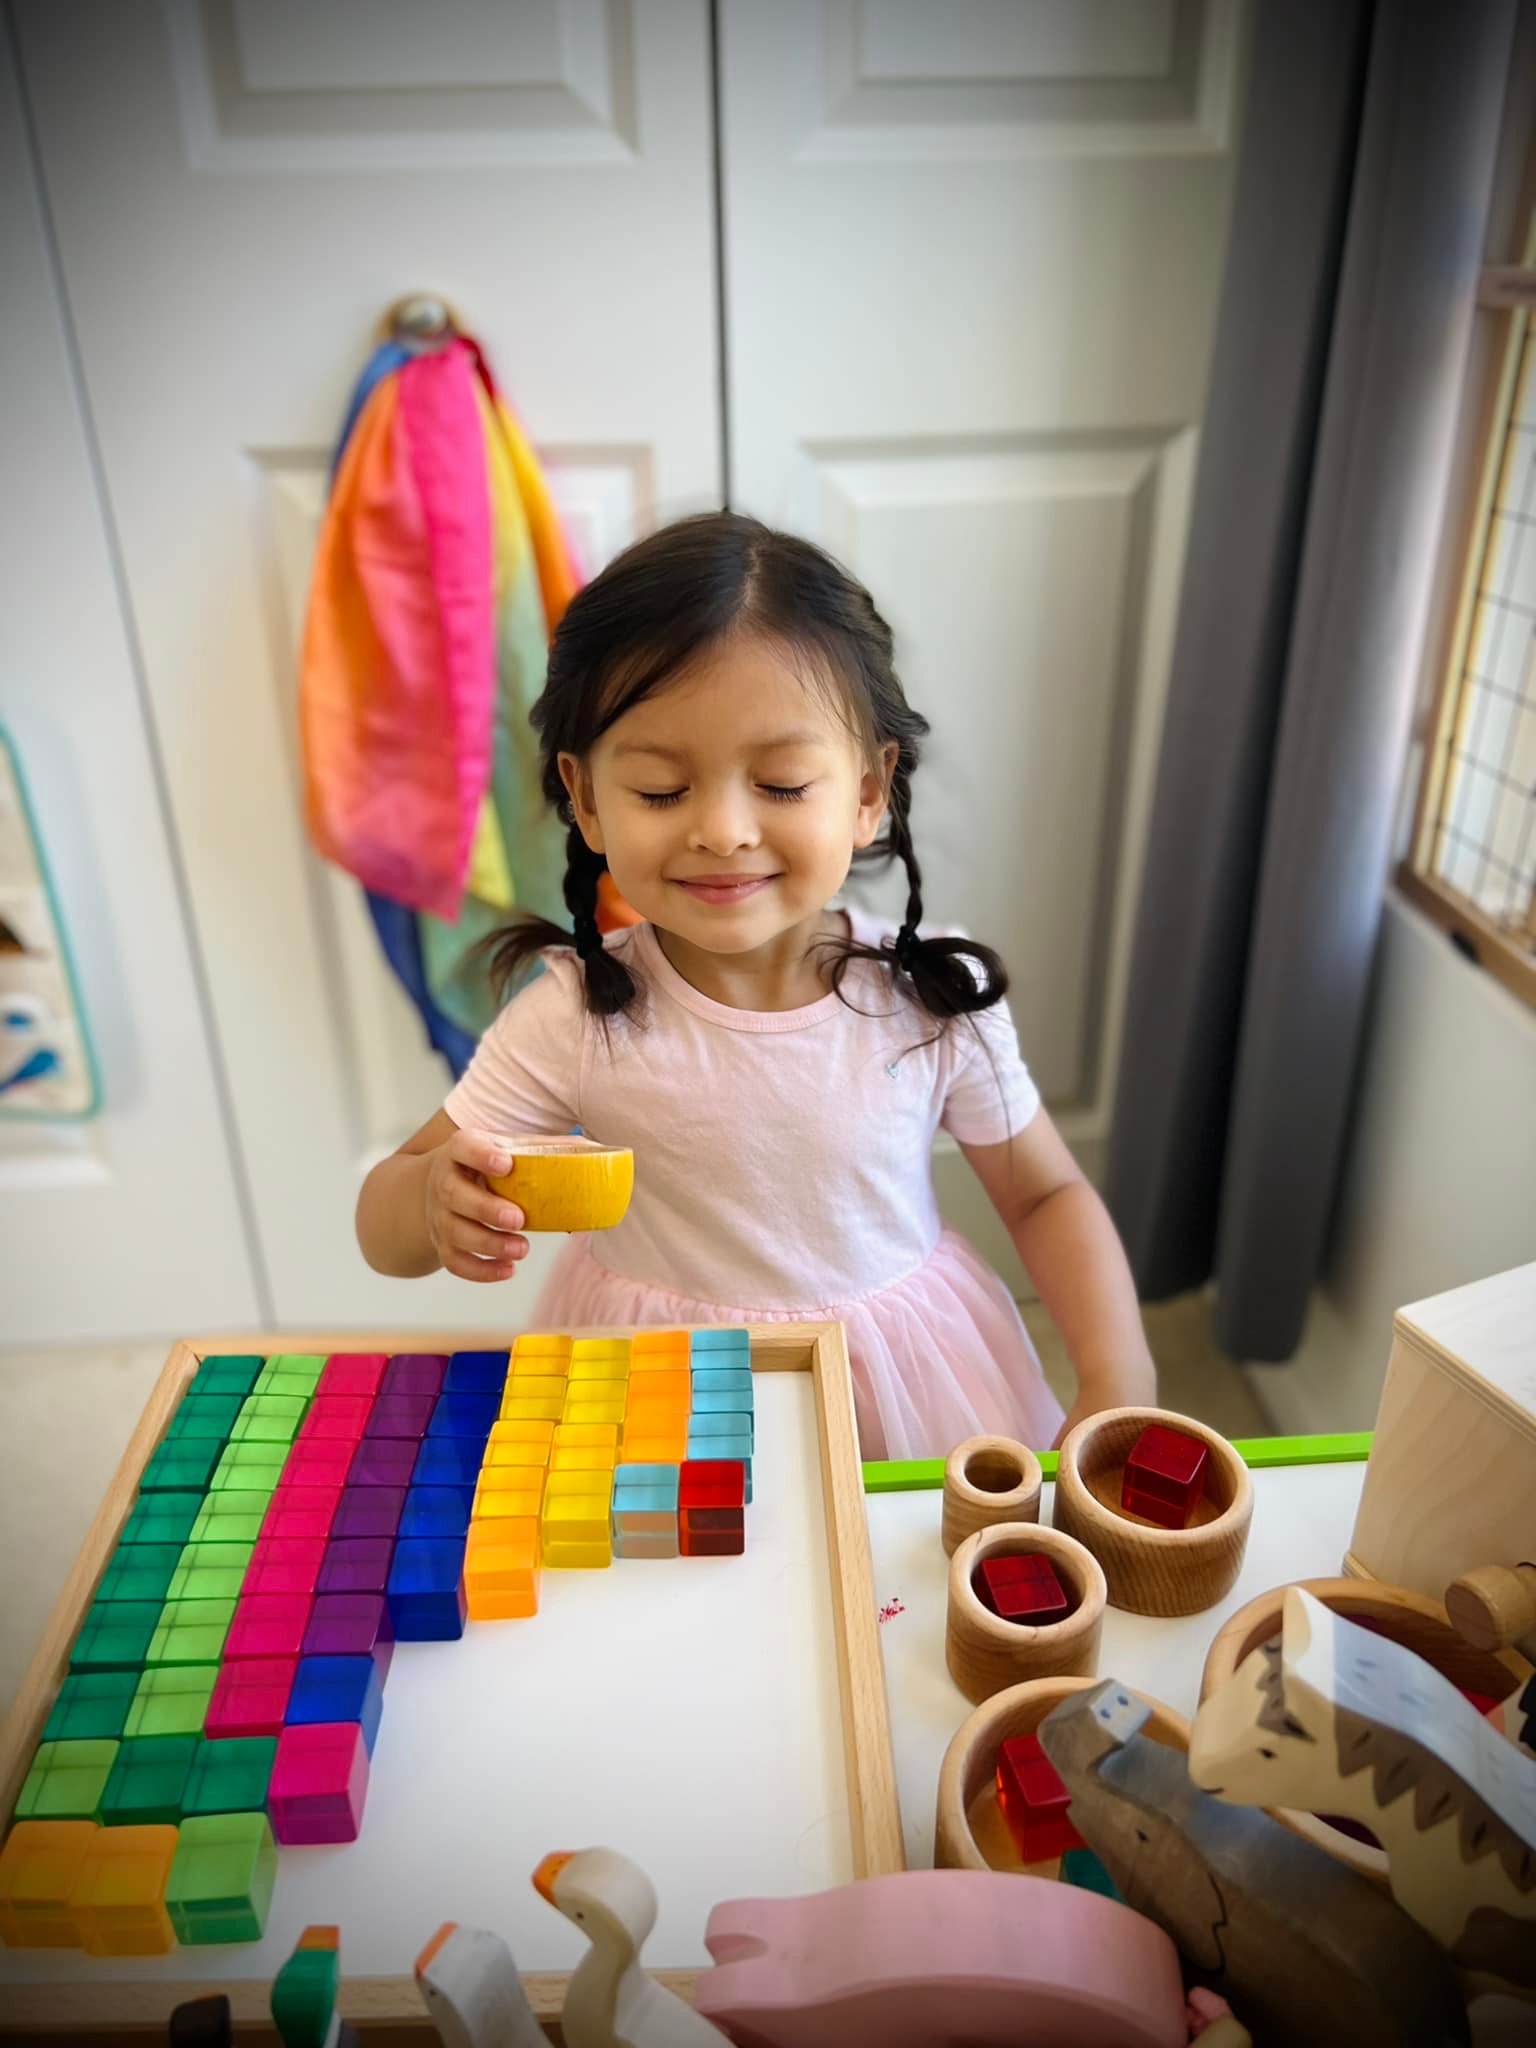 Bí quyết chọn đồ chơi gỗ để trẻ phát triển tư duy, khả năng sáng tạo - Ảnh 2.